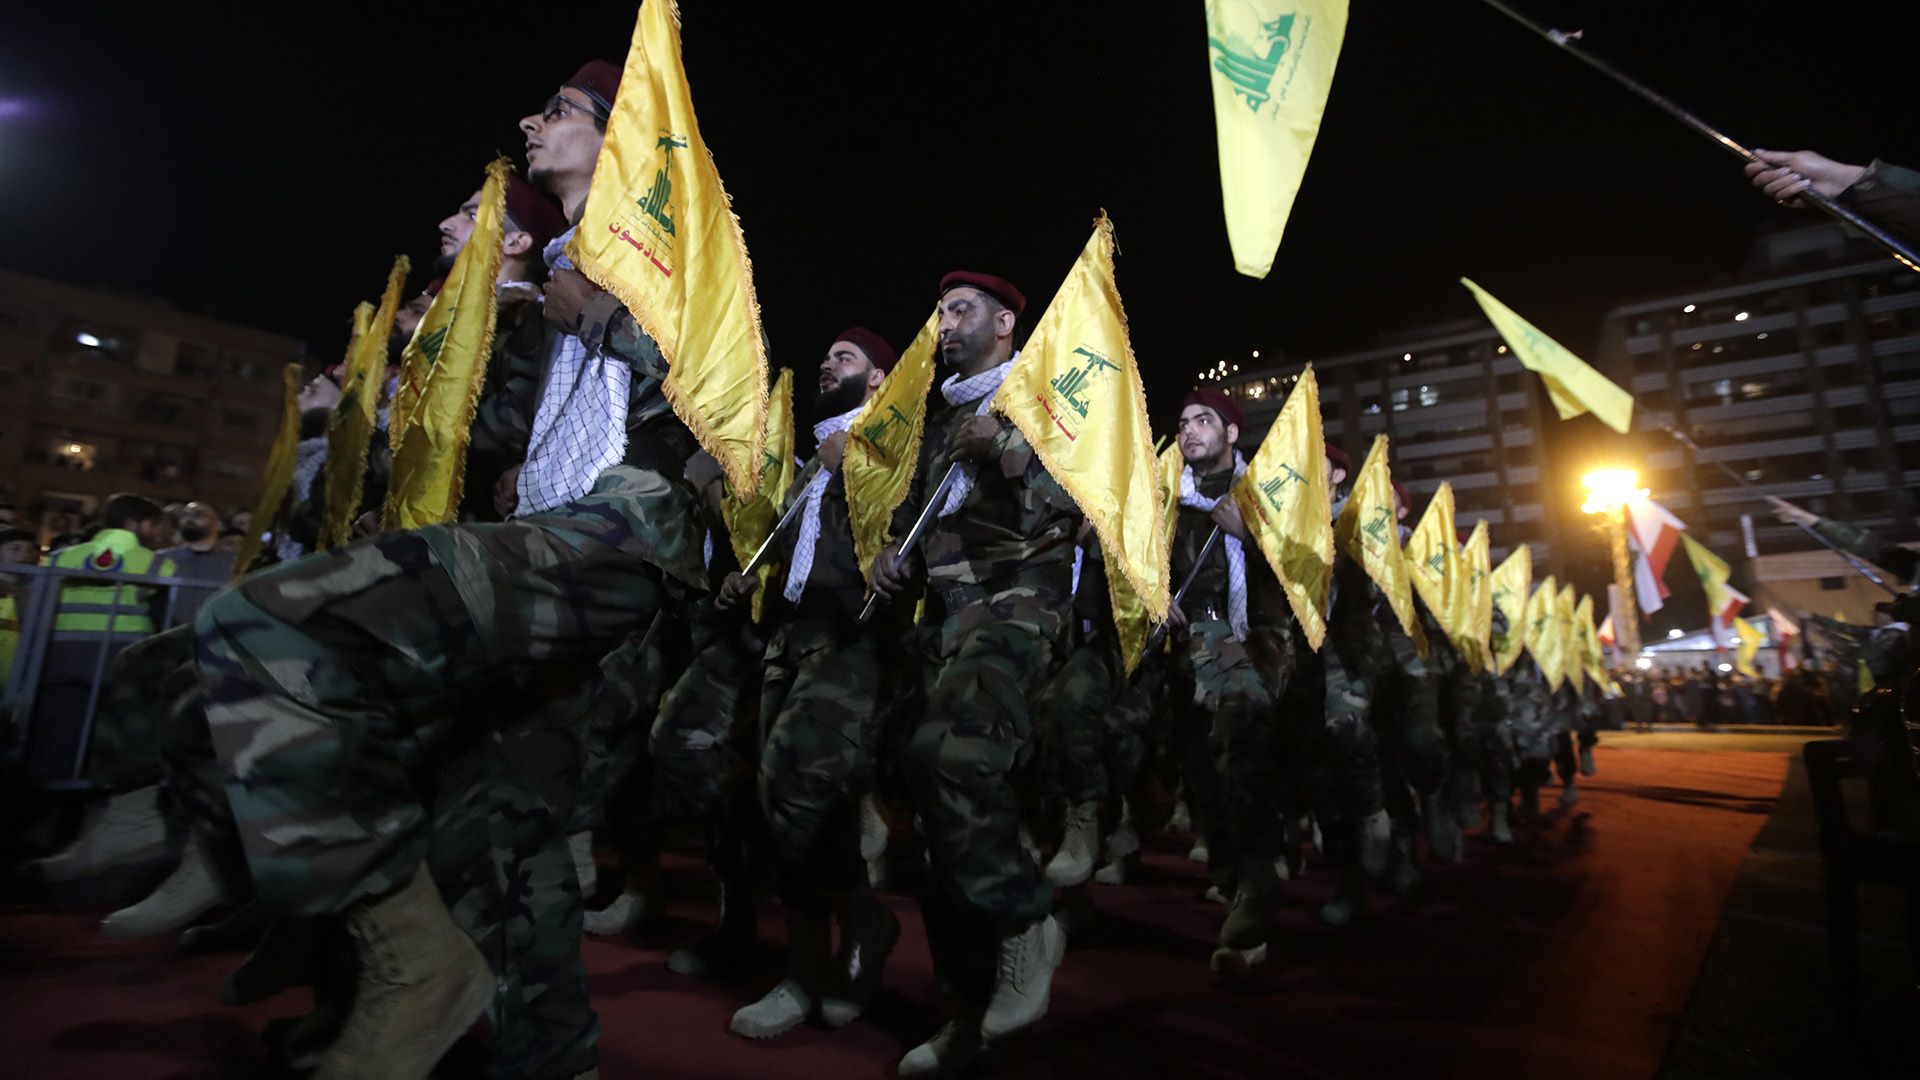 Combatientes del partido libanés chiíta Hezbollah desfilaron en un suburbio del sur de Beirut para conmemorar el Día Internacional de Al Quds (Jerusalén), el 31 de mayo de 2019 (Photo by Anwar AMRO / AFP)